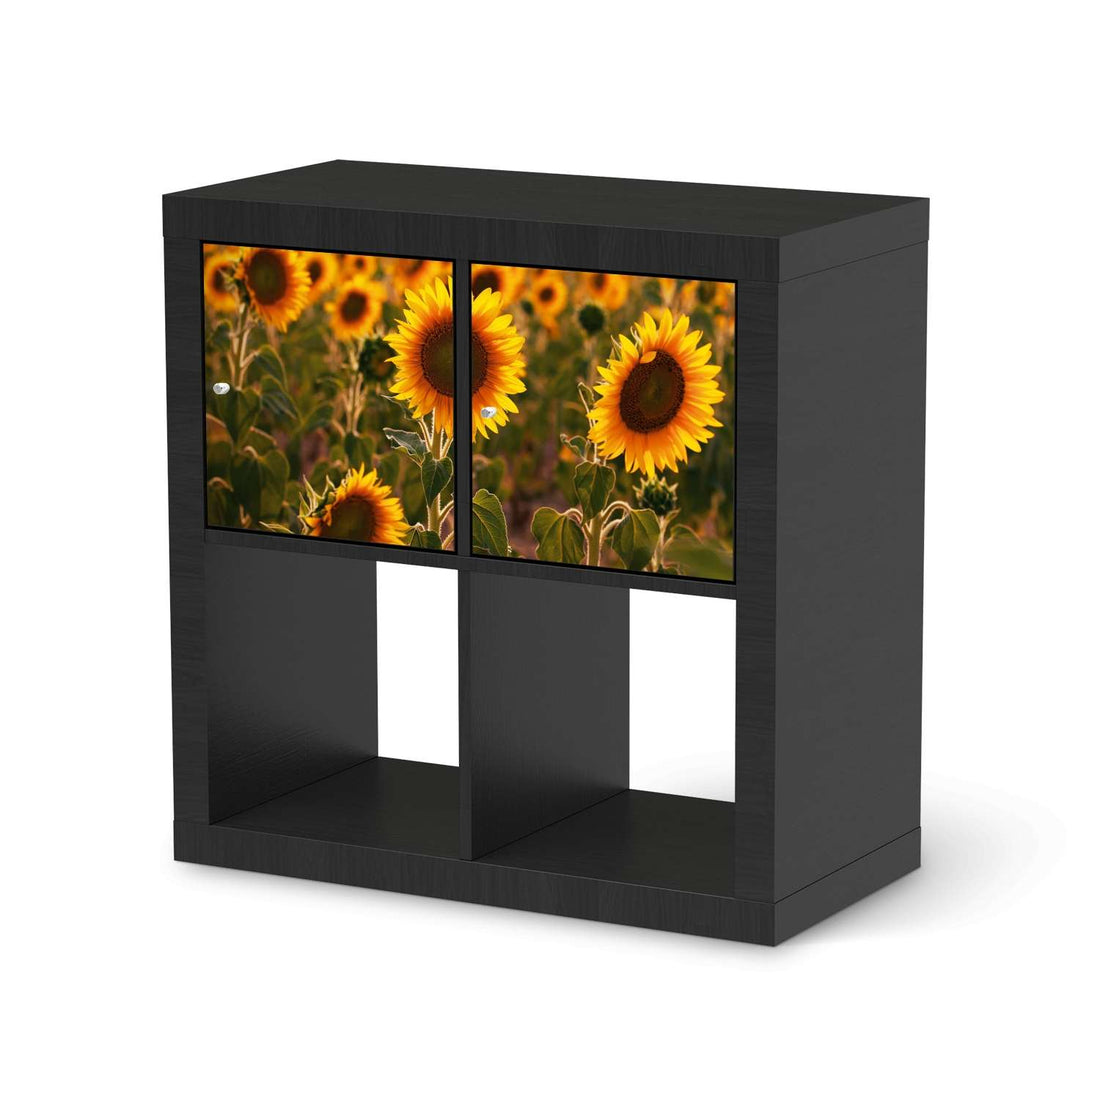 Möbel Klebefolie Sunflowers - IKEA Expedit Regal 2 Türen Quer - schwarz